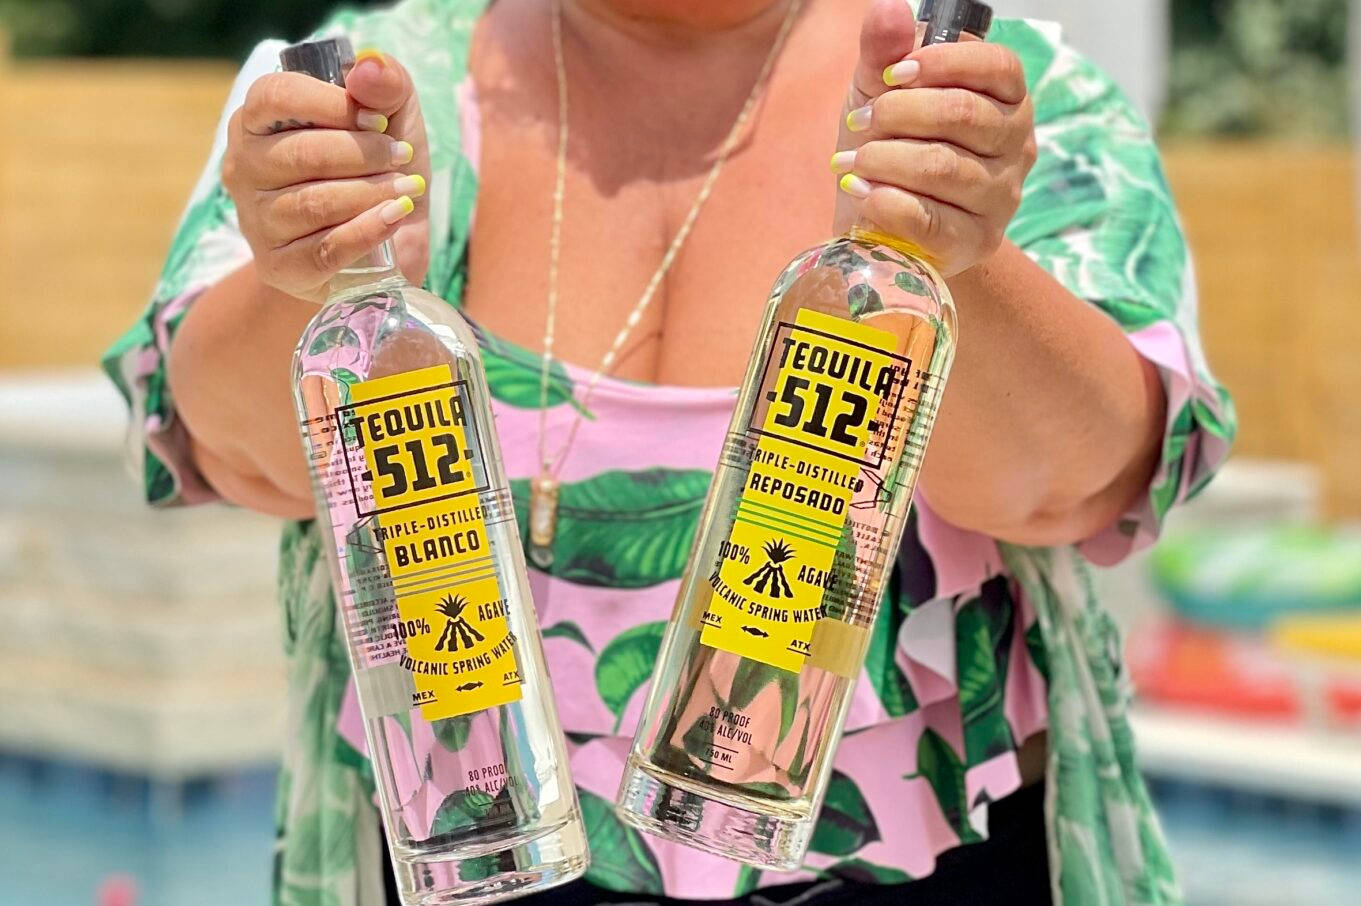 Tequila 512 Blanco Reposado Lady - En beskrivelse af glimt til kontoret Wallpaper